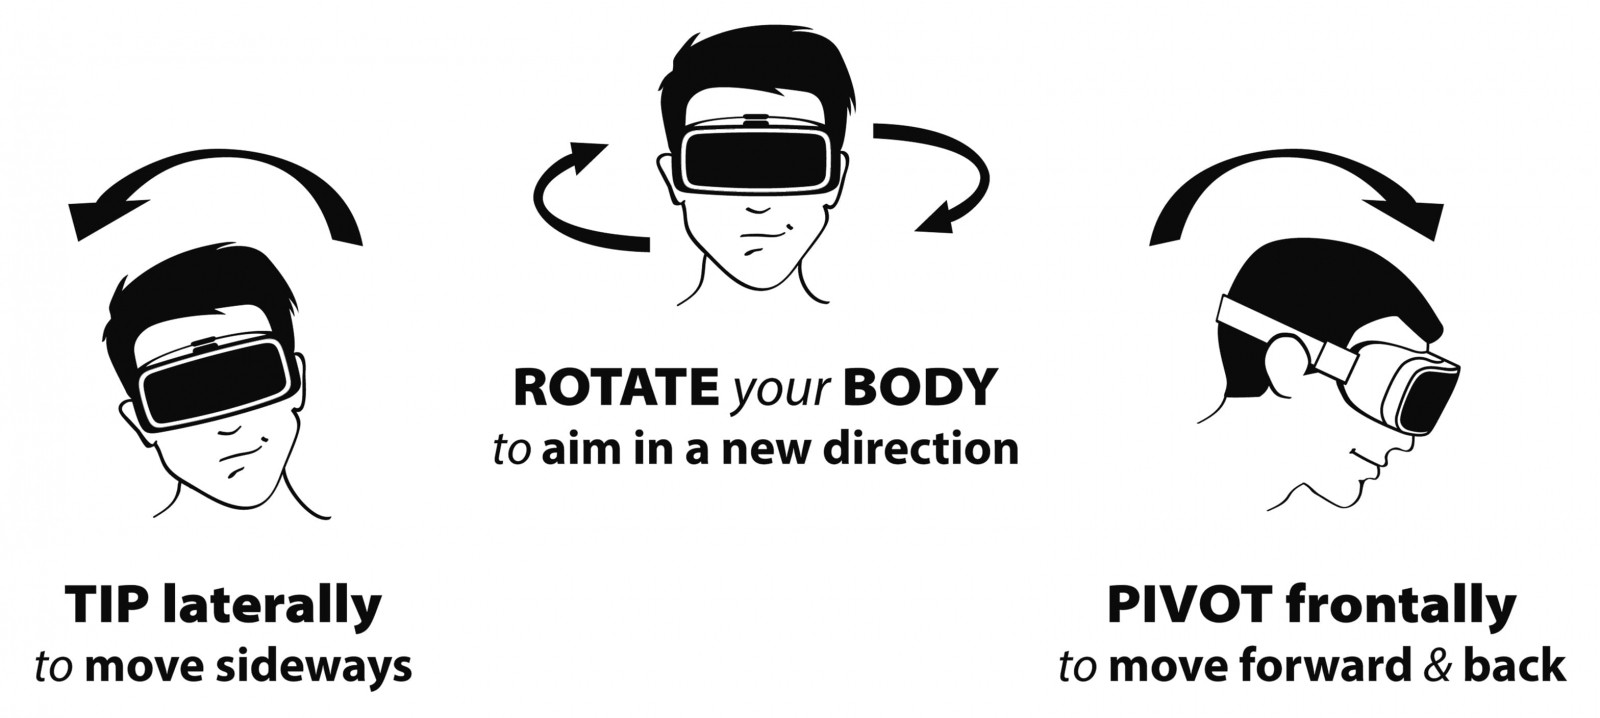 Сможет ли компания MONKEYmedia решить проблему тошноты в VR?